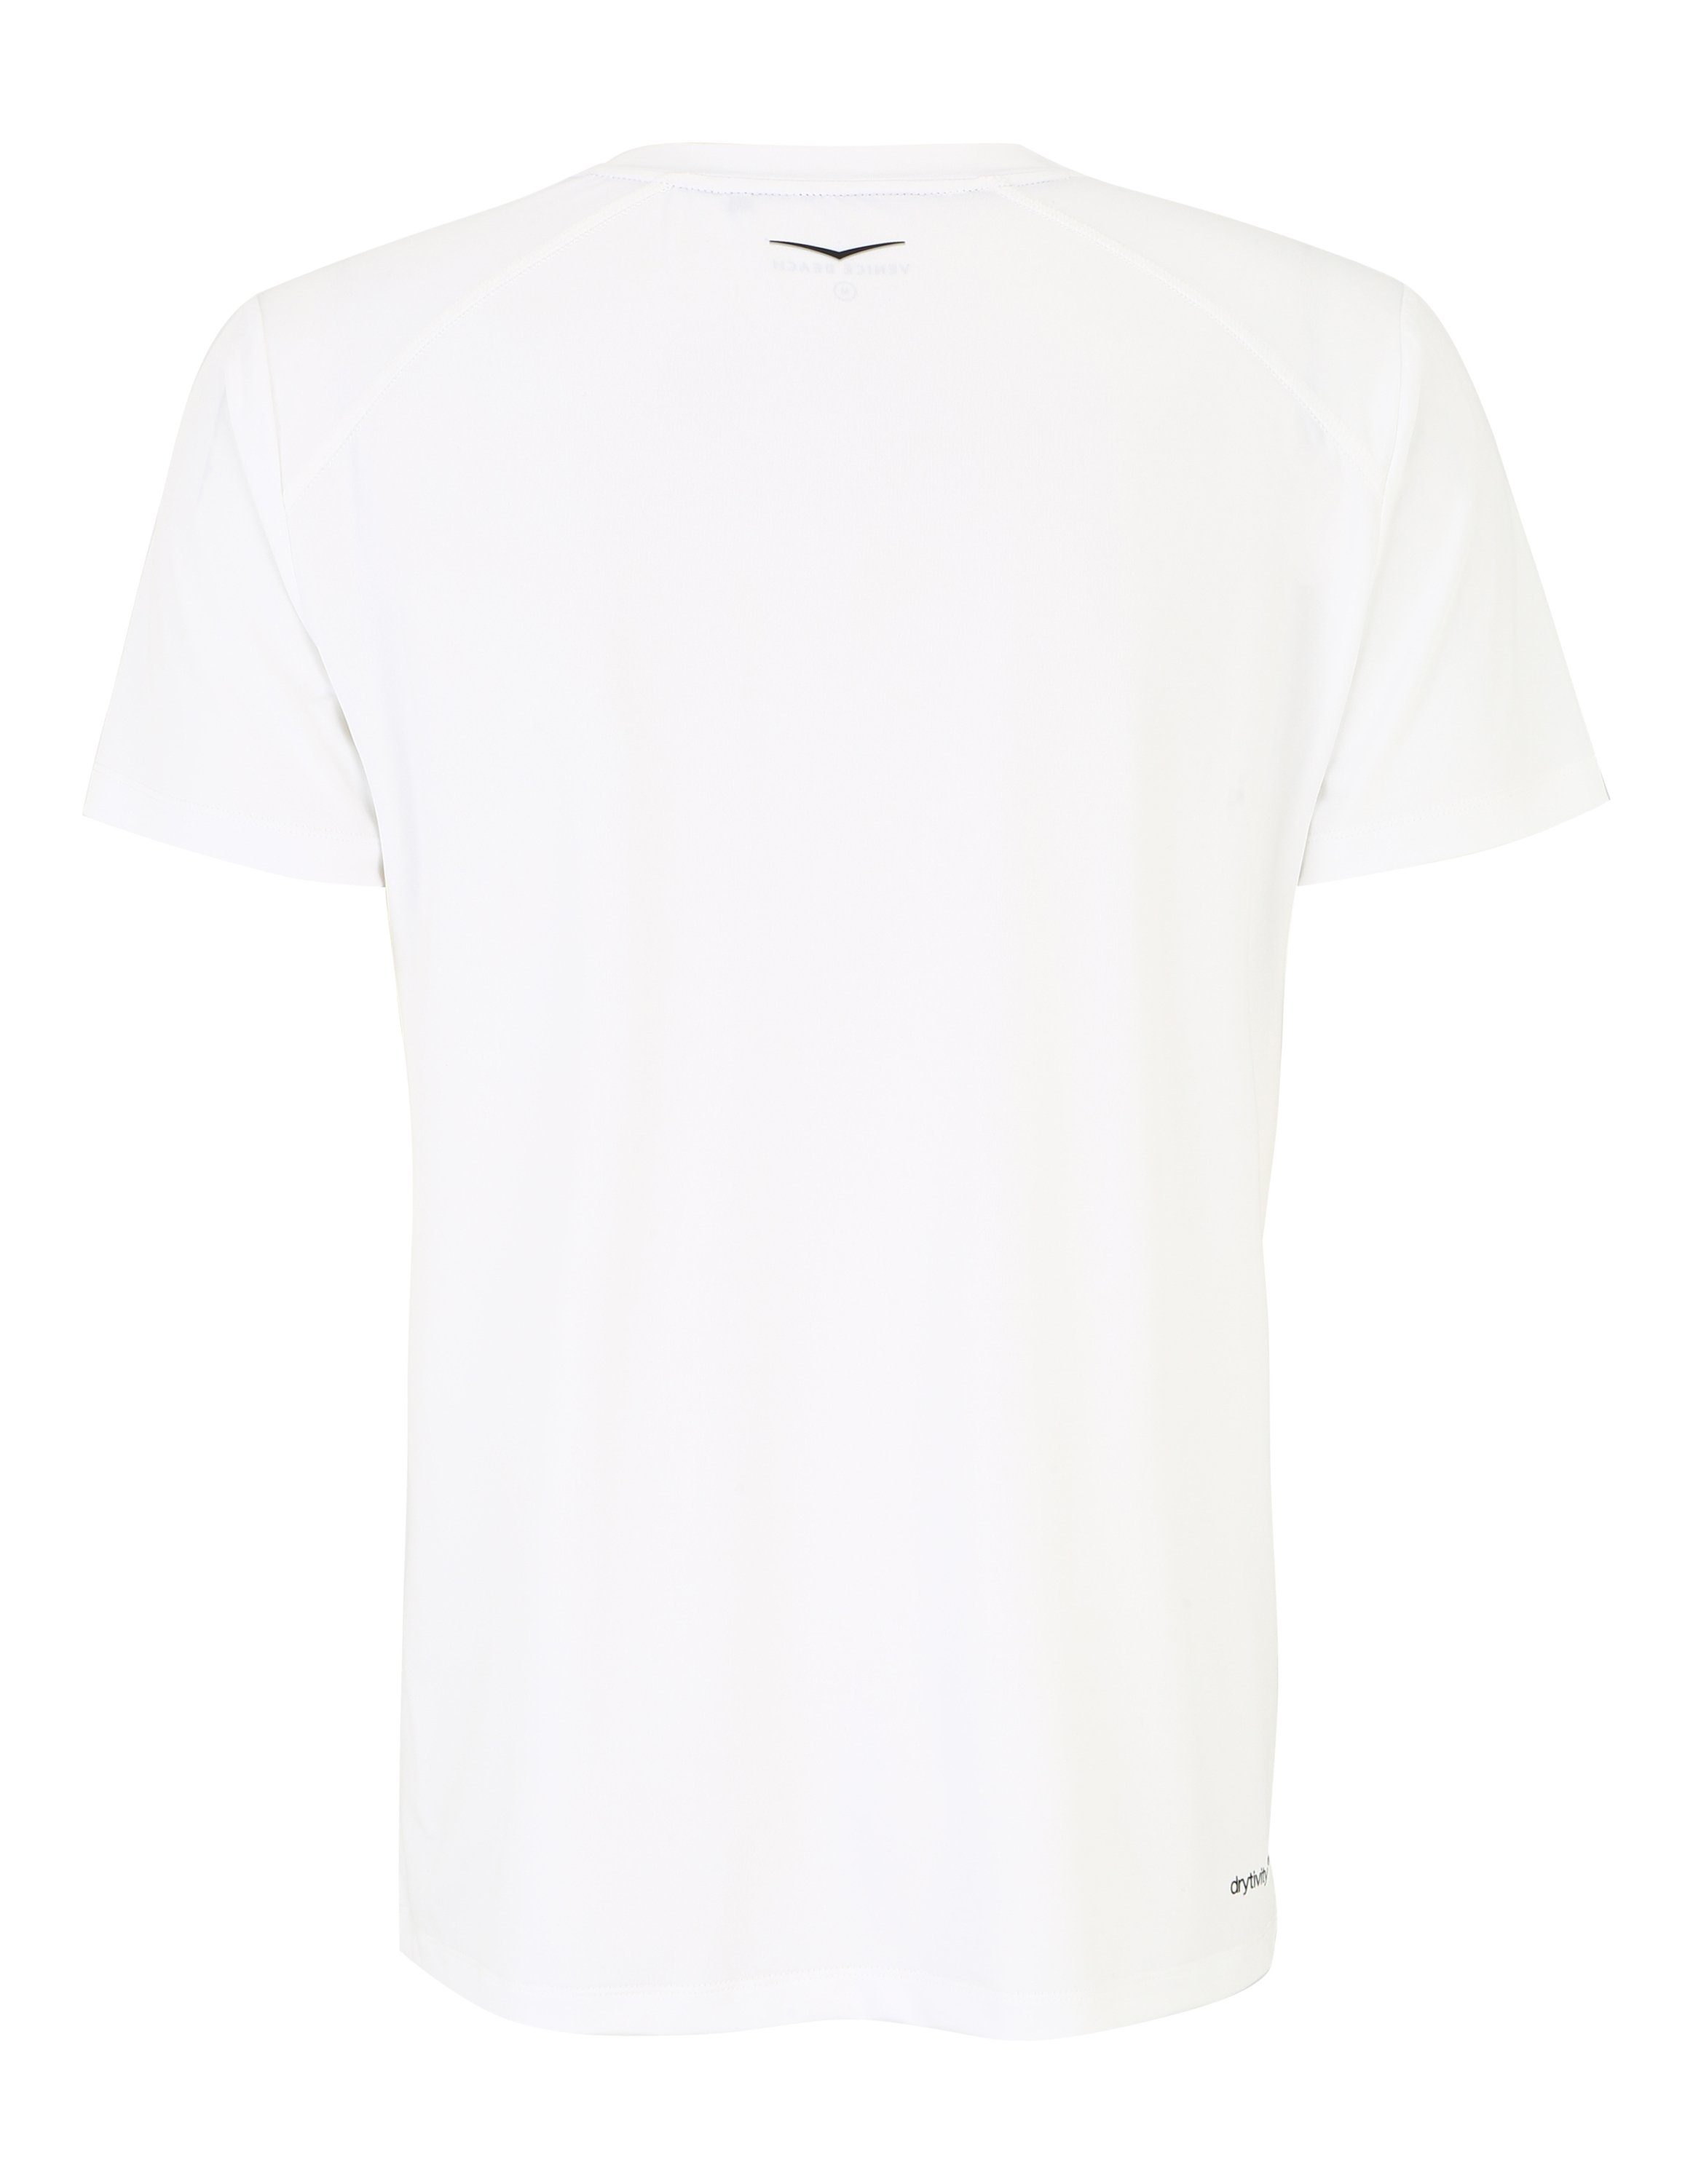 Venice Beach T-Shirt T-Shirt white Hayes VBM